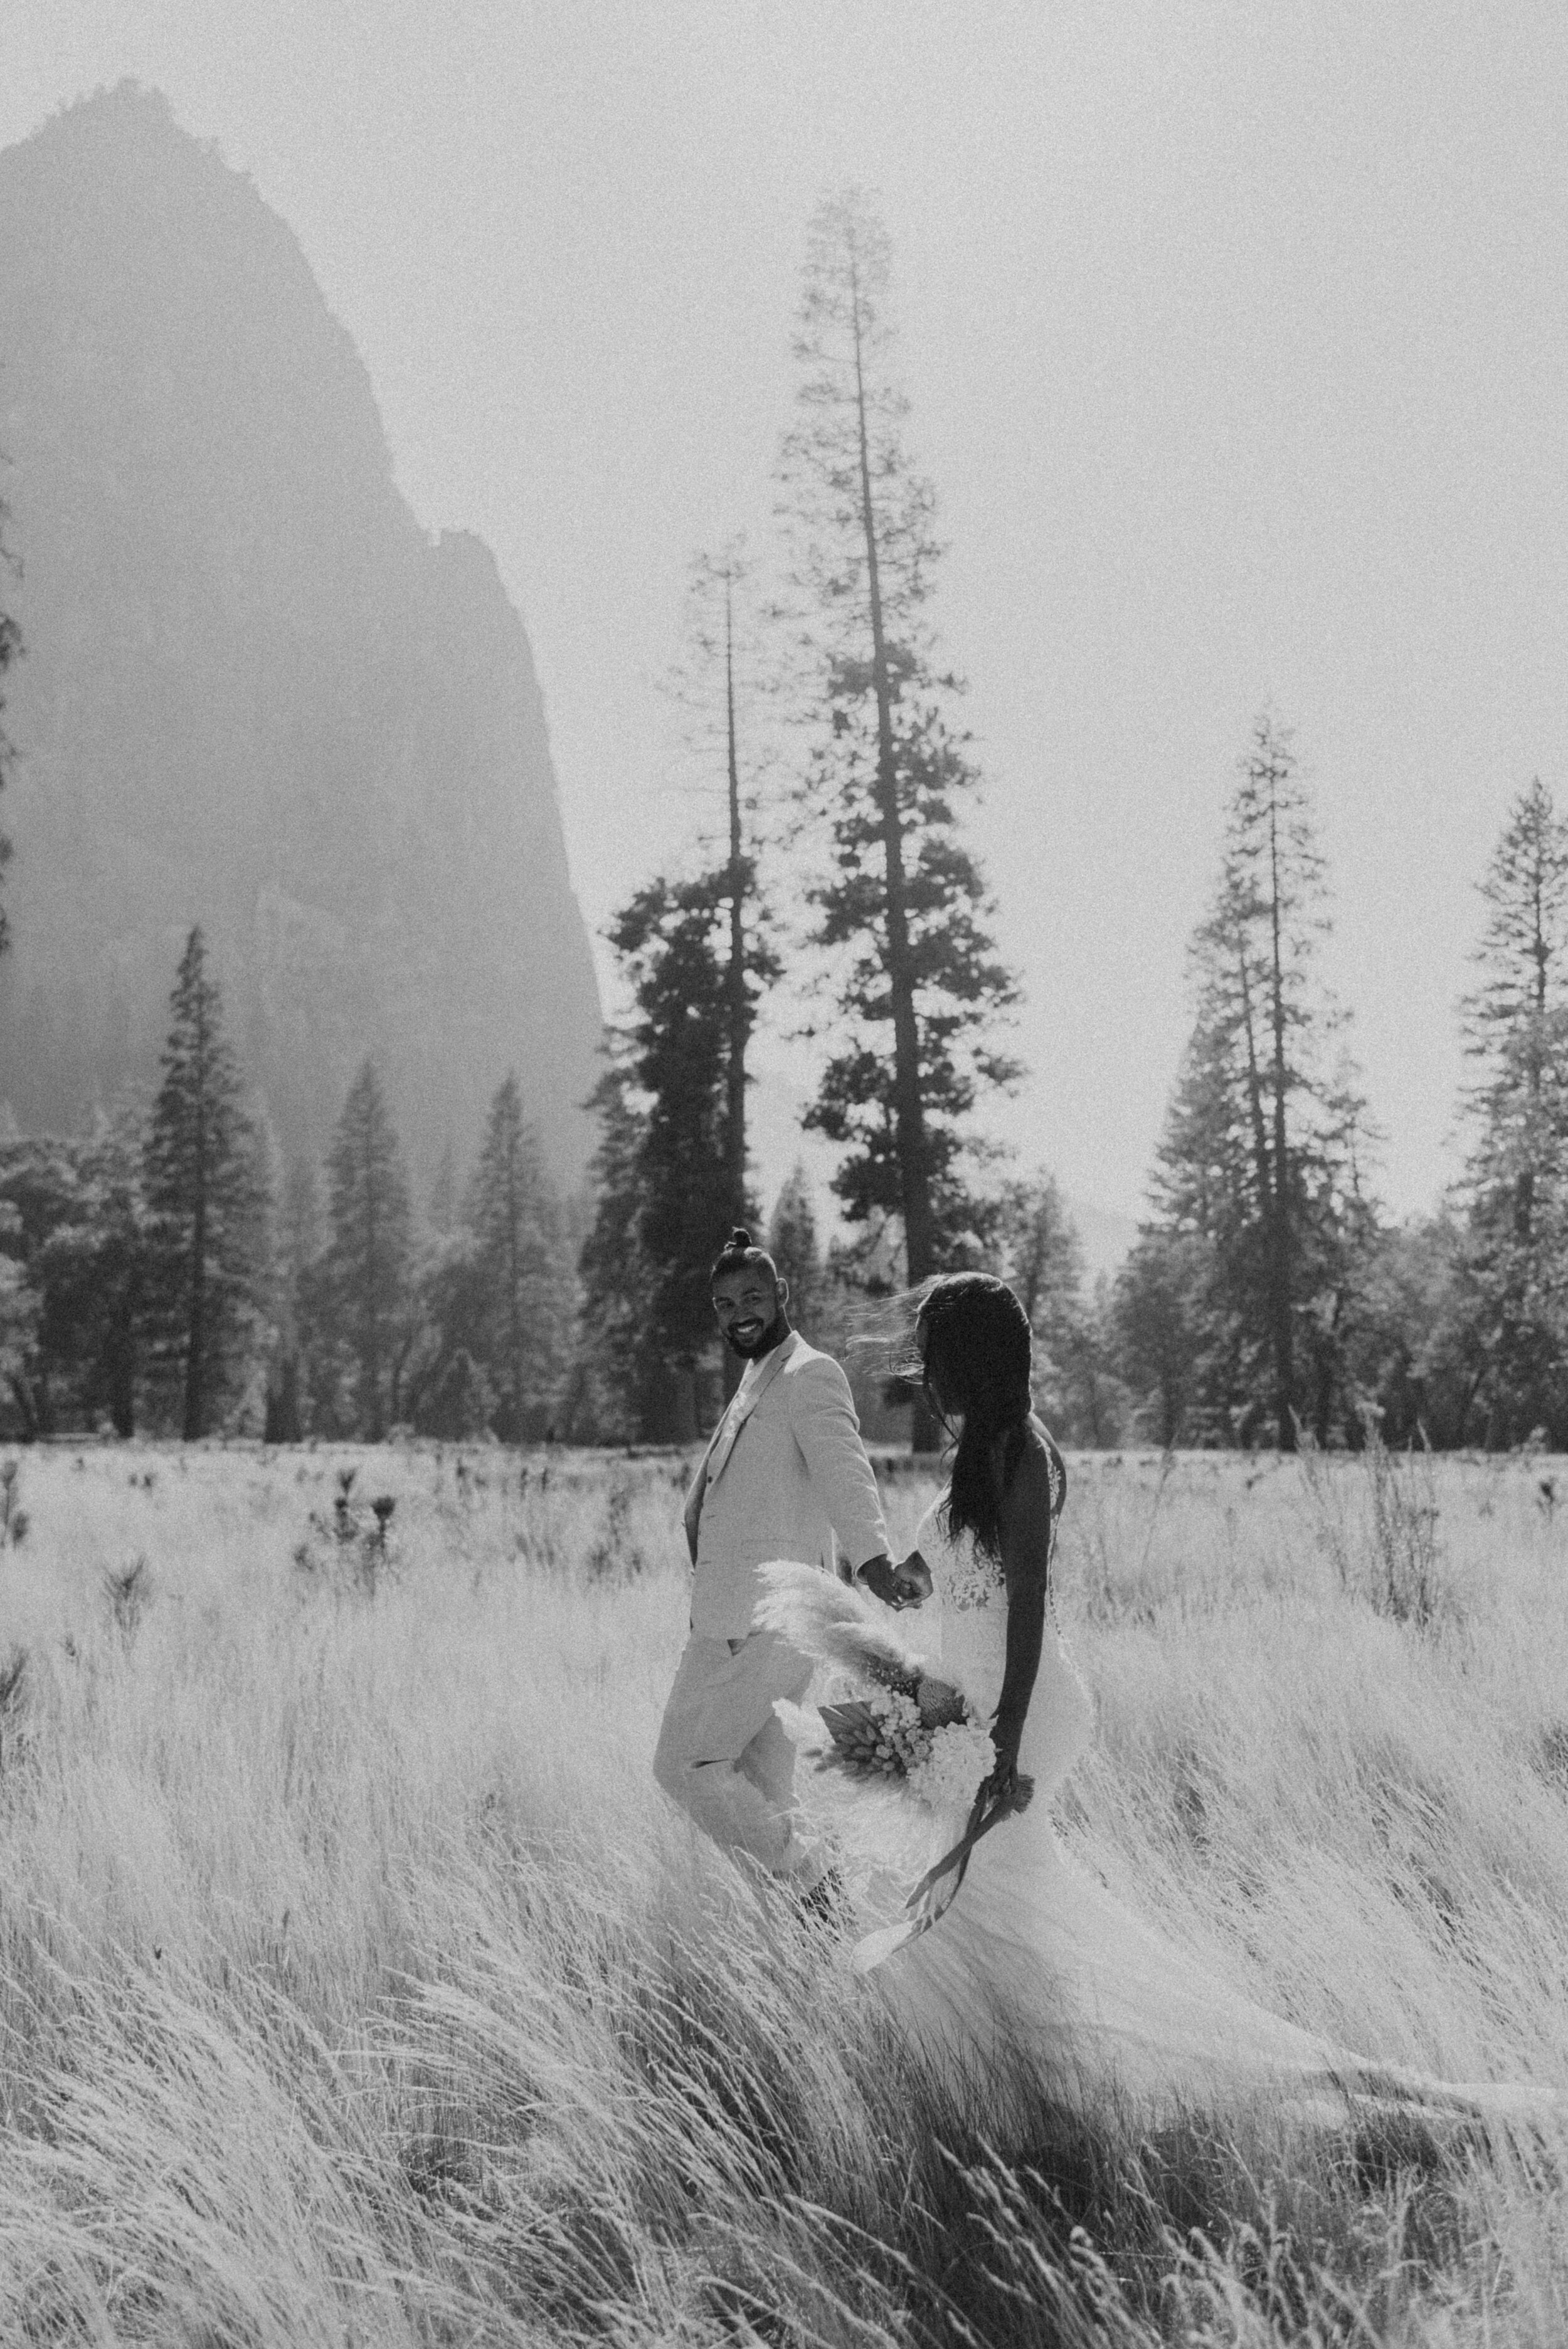 Yosemite Valley Elopement | Eloping in Yosemite National Park | Adventure Elopement Wedding | Yosemite Elopement Photographer | Cook’s Meadow | El Capitan Meadow